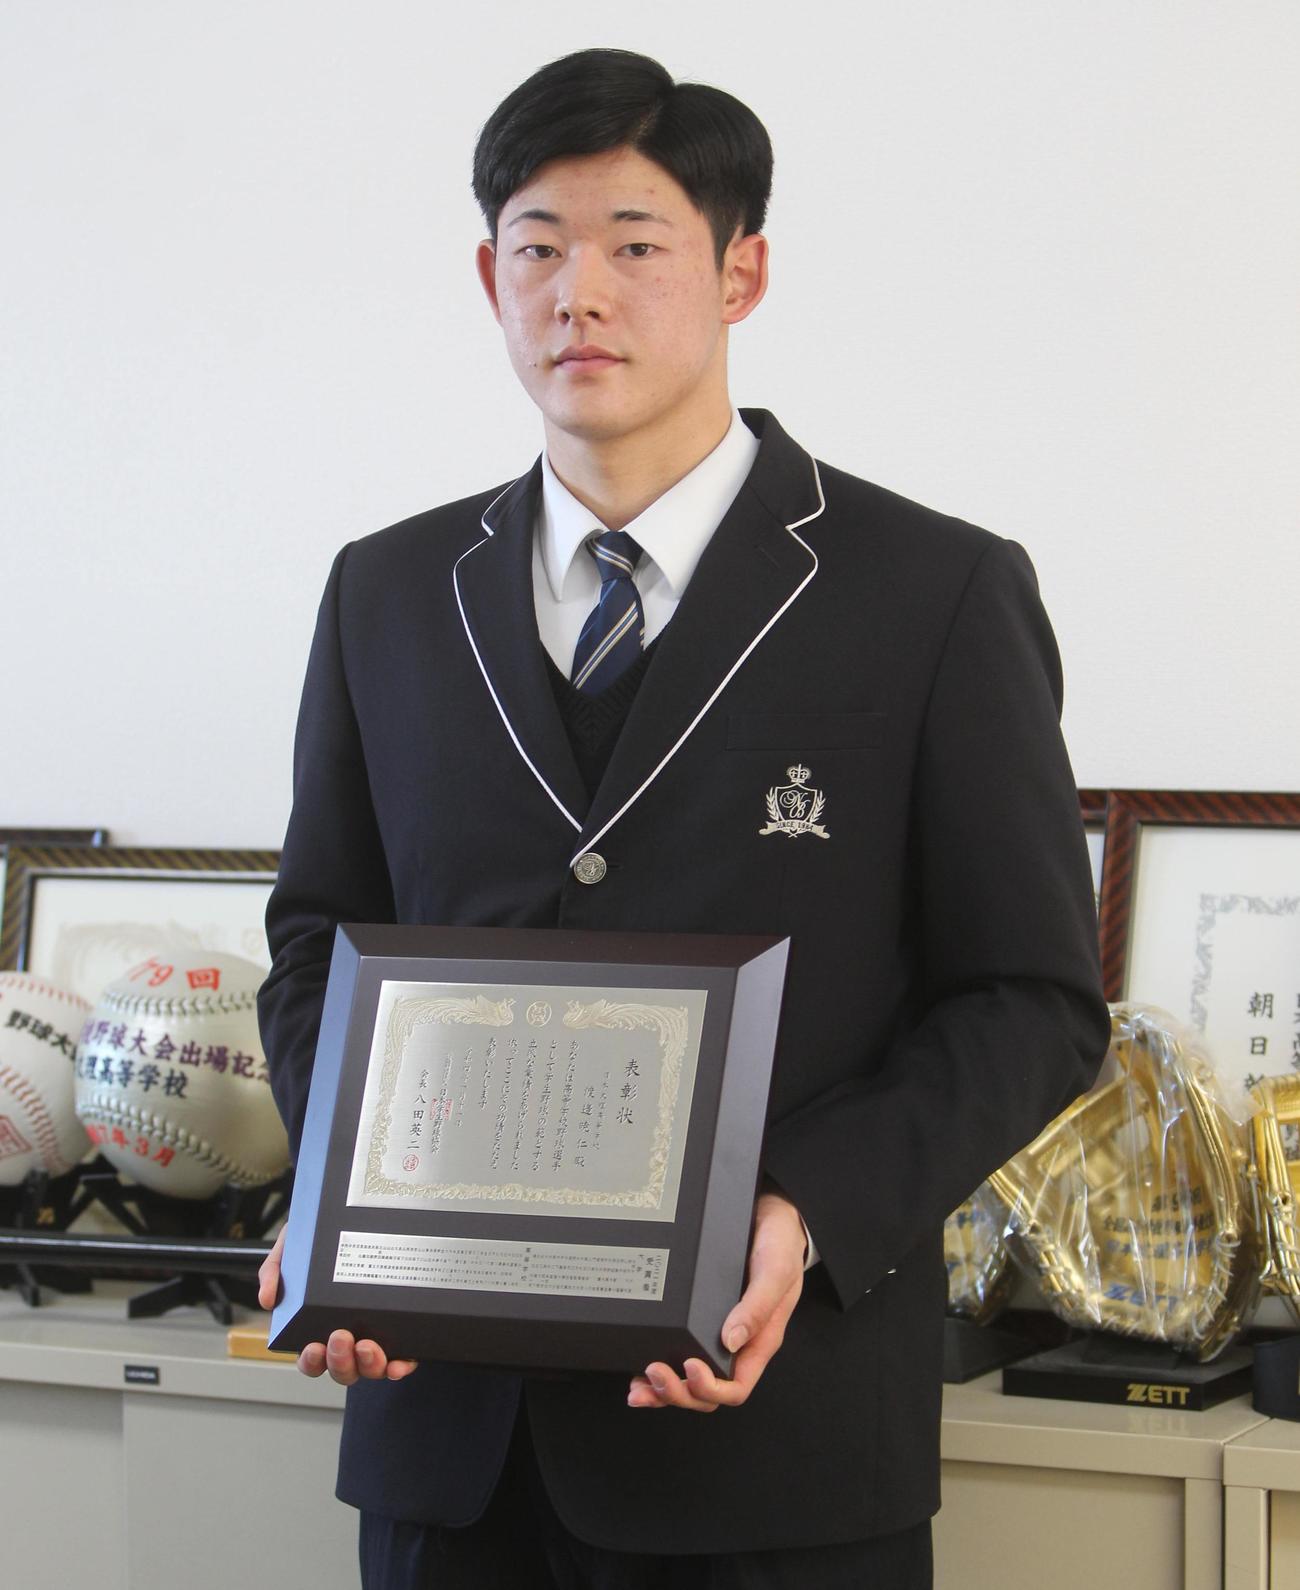 日本学生野球協会の優秀選手に選ばれた日本文理・渡辺